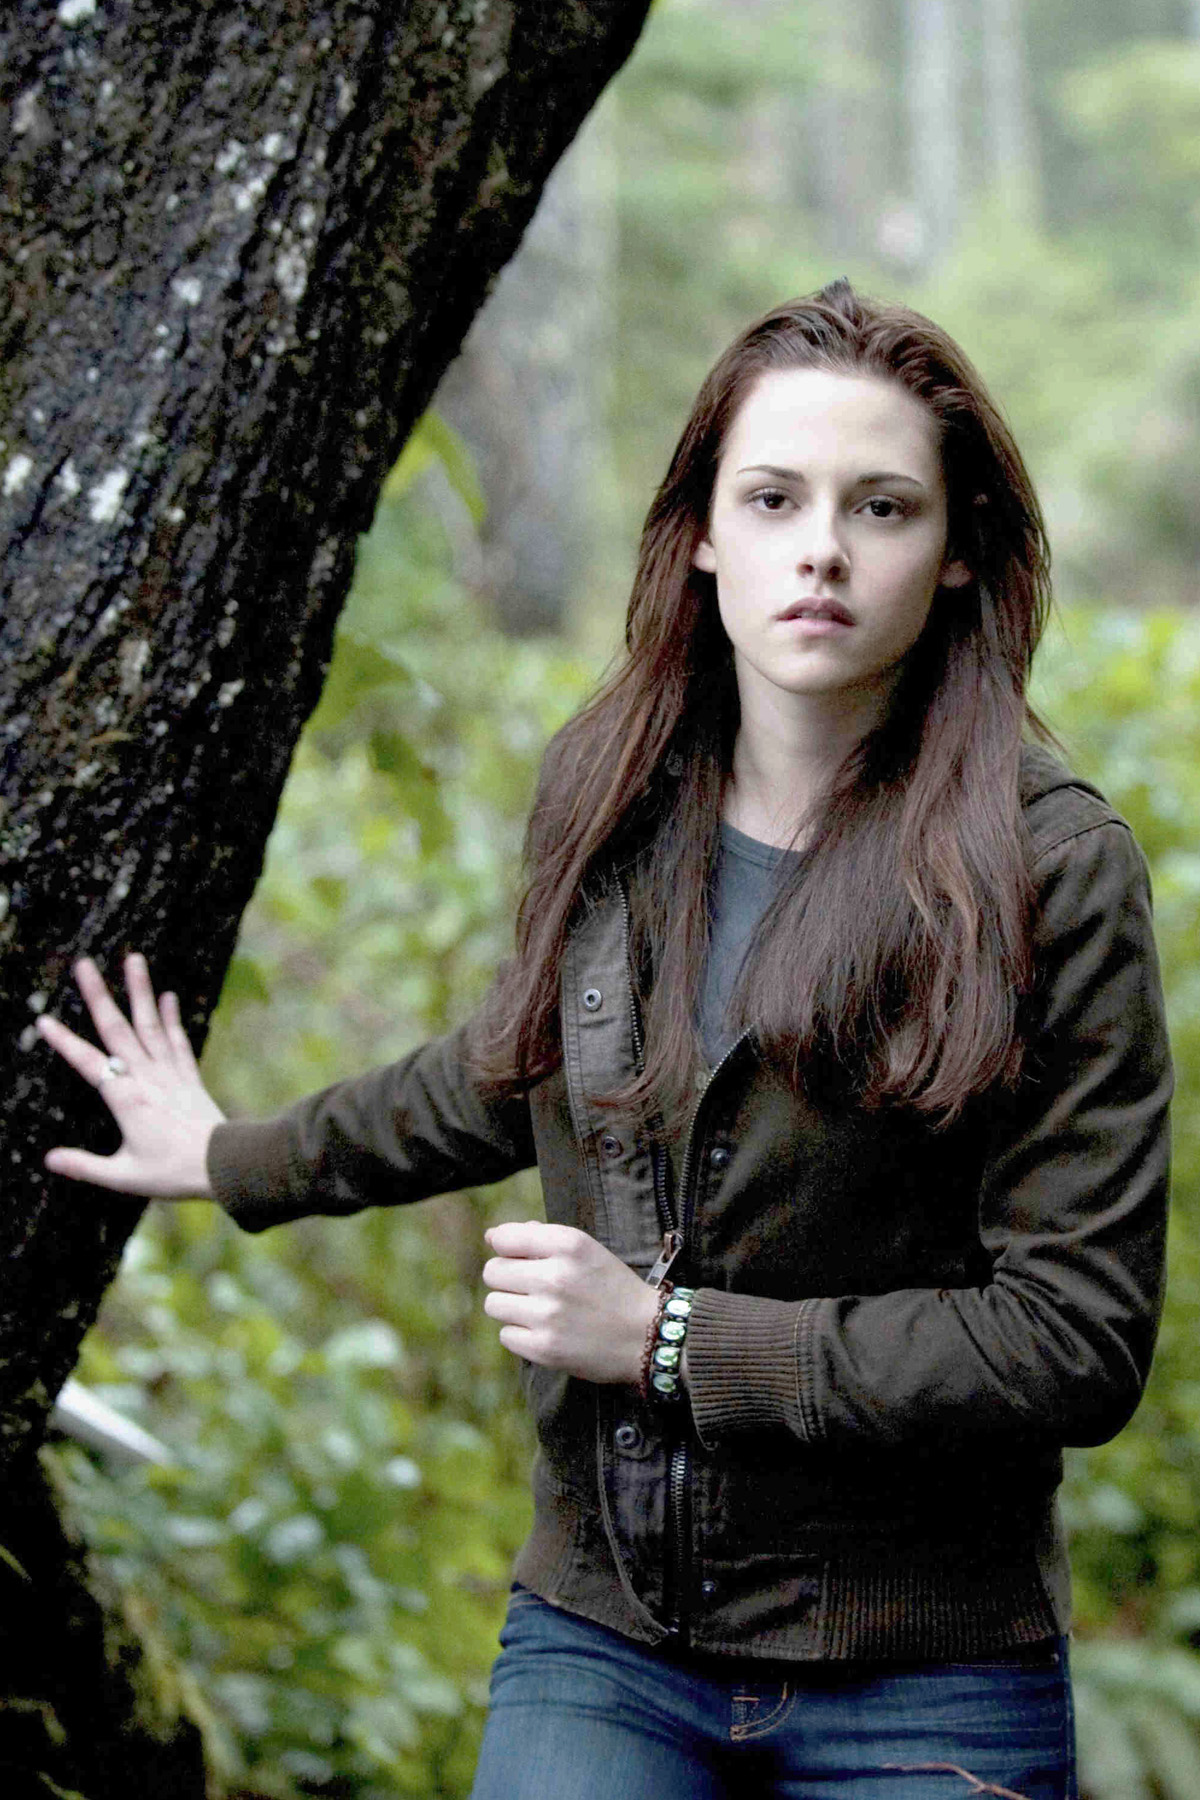 Picture of Kristen Stewart in The Twilight Saga: New Moon - kristen_stewart_1295470046 ...1200 x 1800